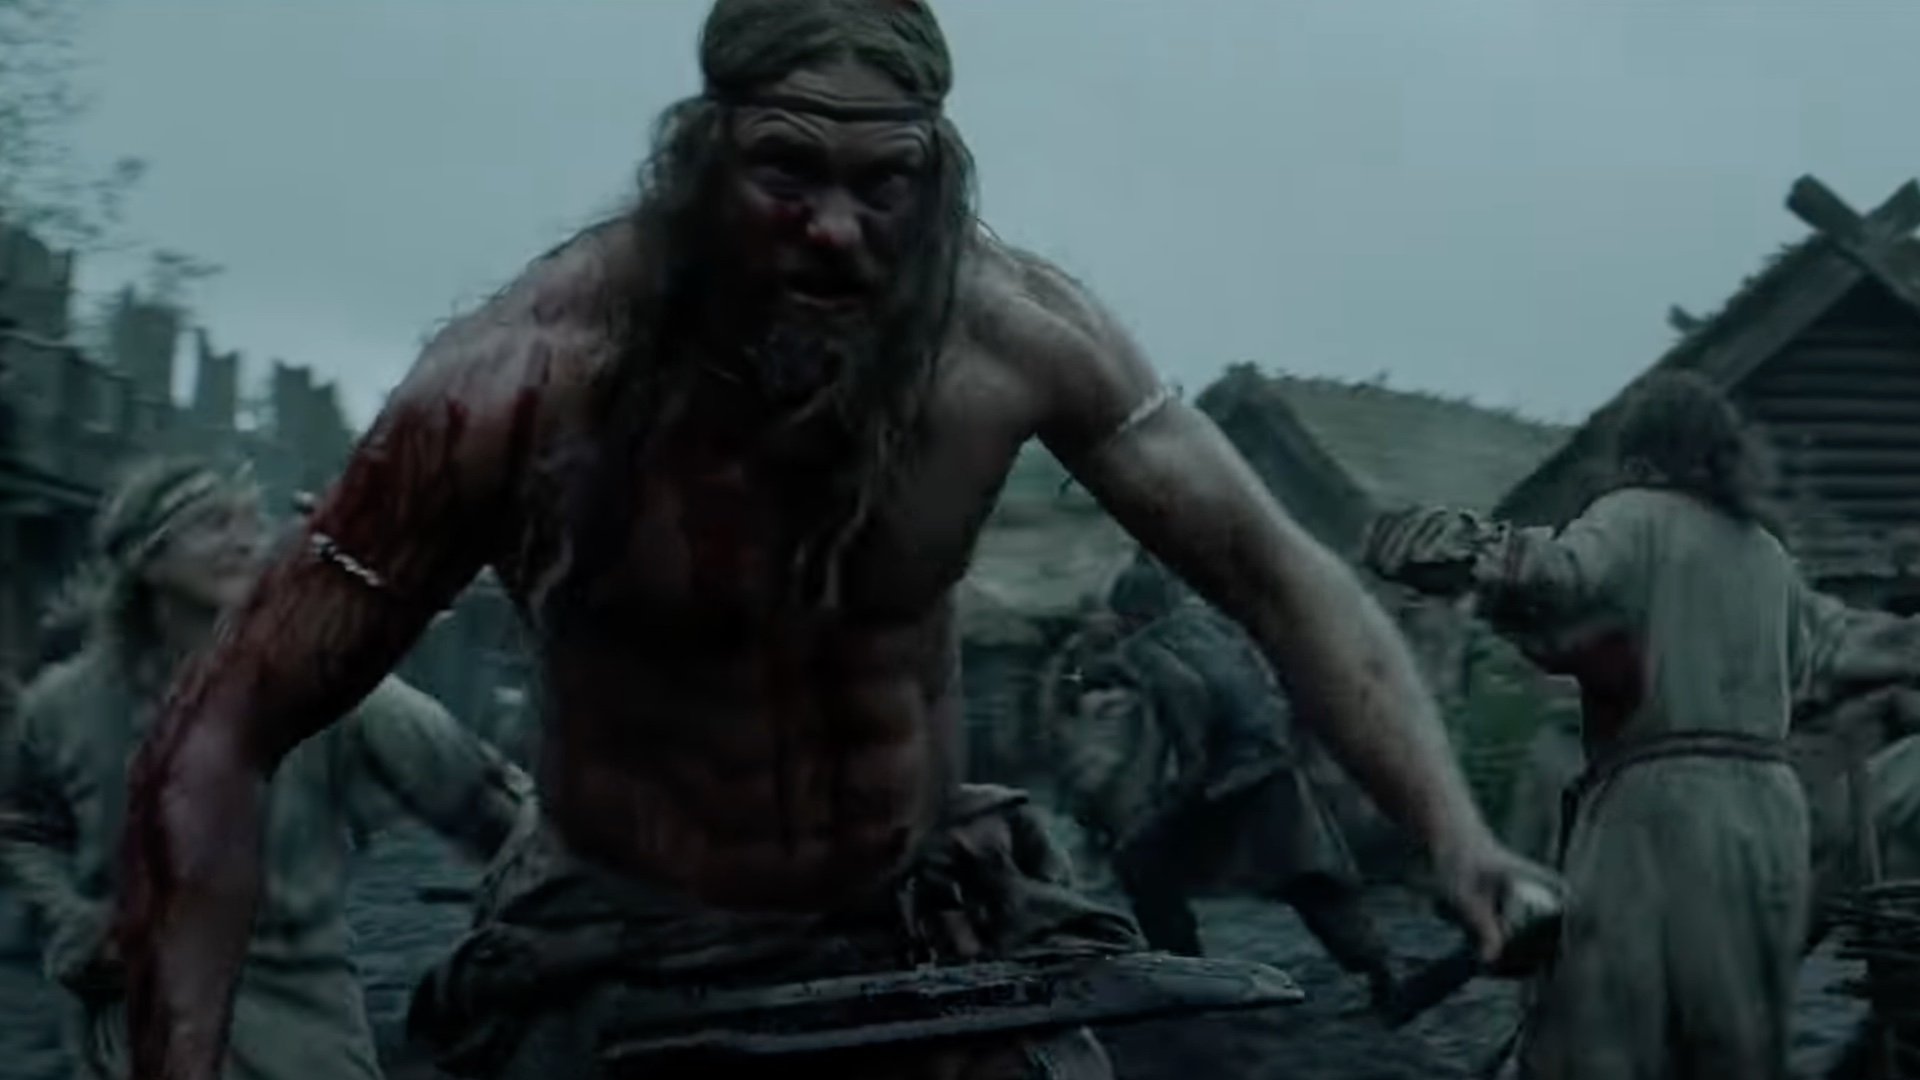 Brutal Trailer For The Viking Revenge Thriller Northman From